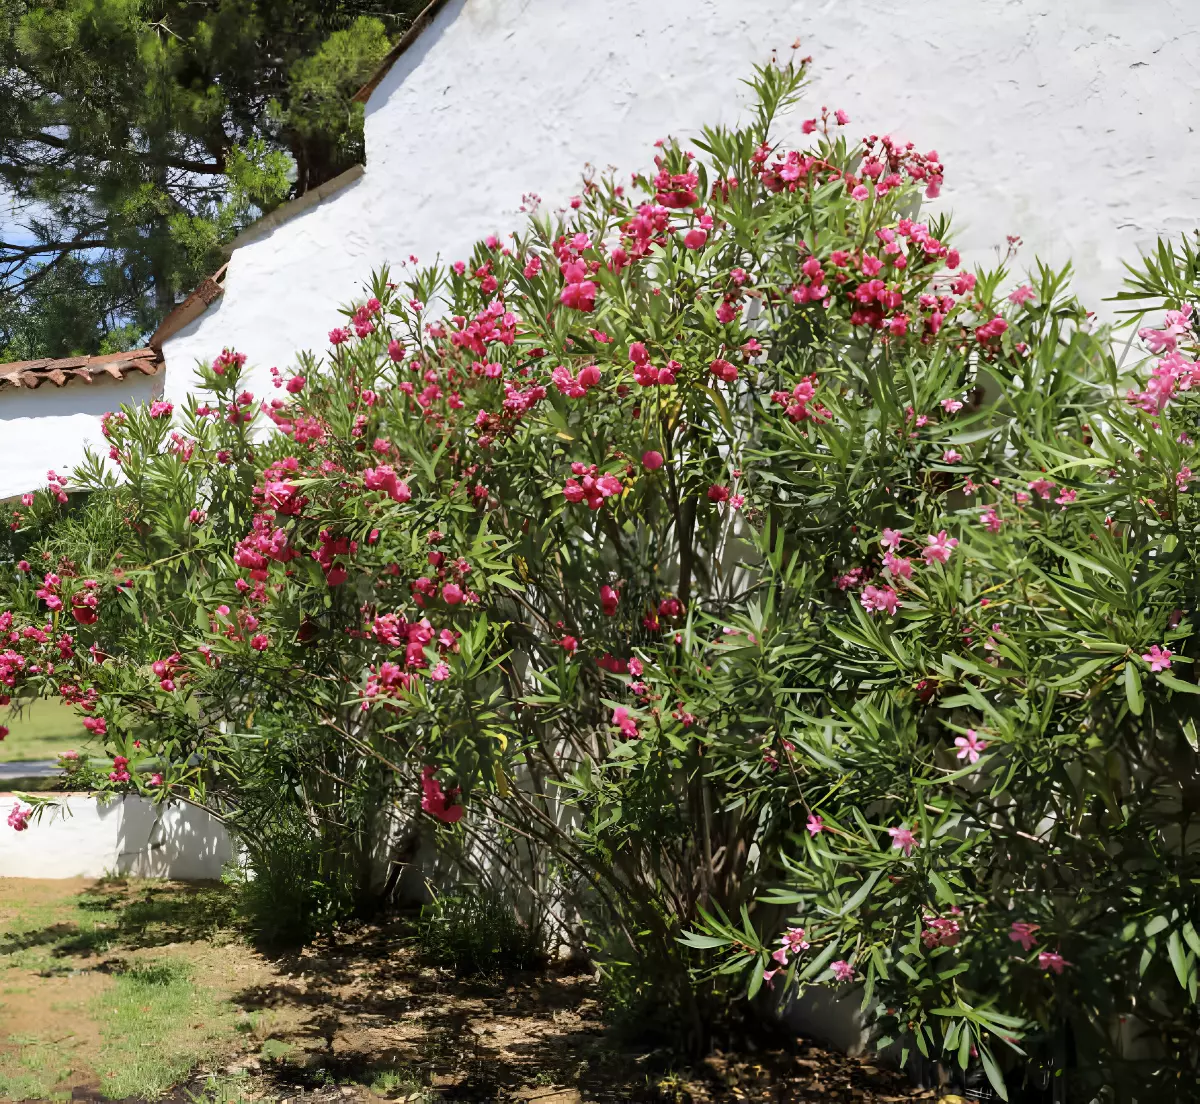 plusieurs arbustes de lauriers roses adosses a bâtiment au mur blanc exterieur